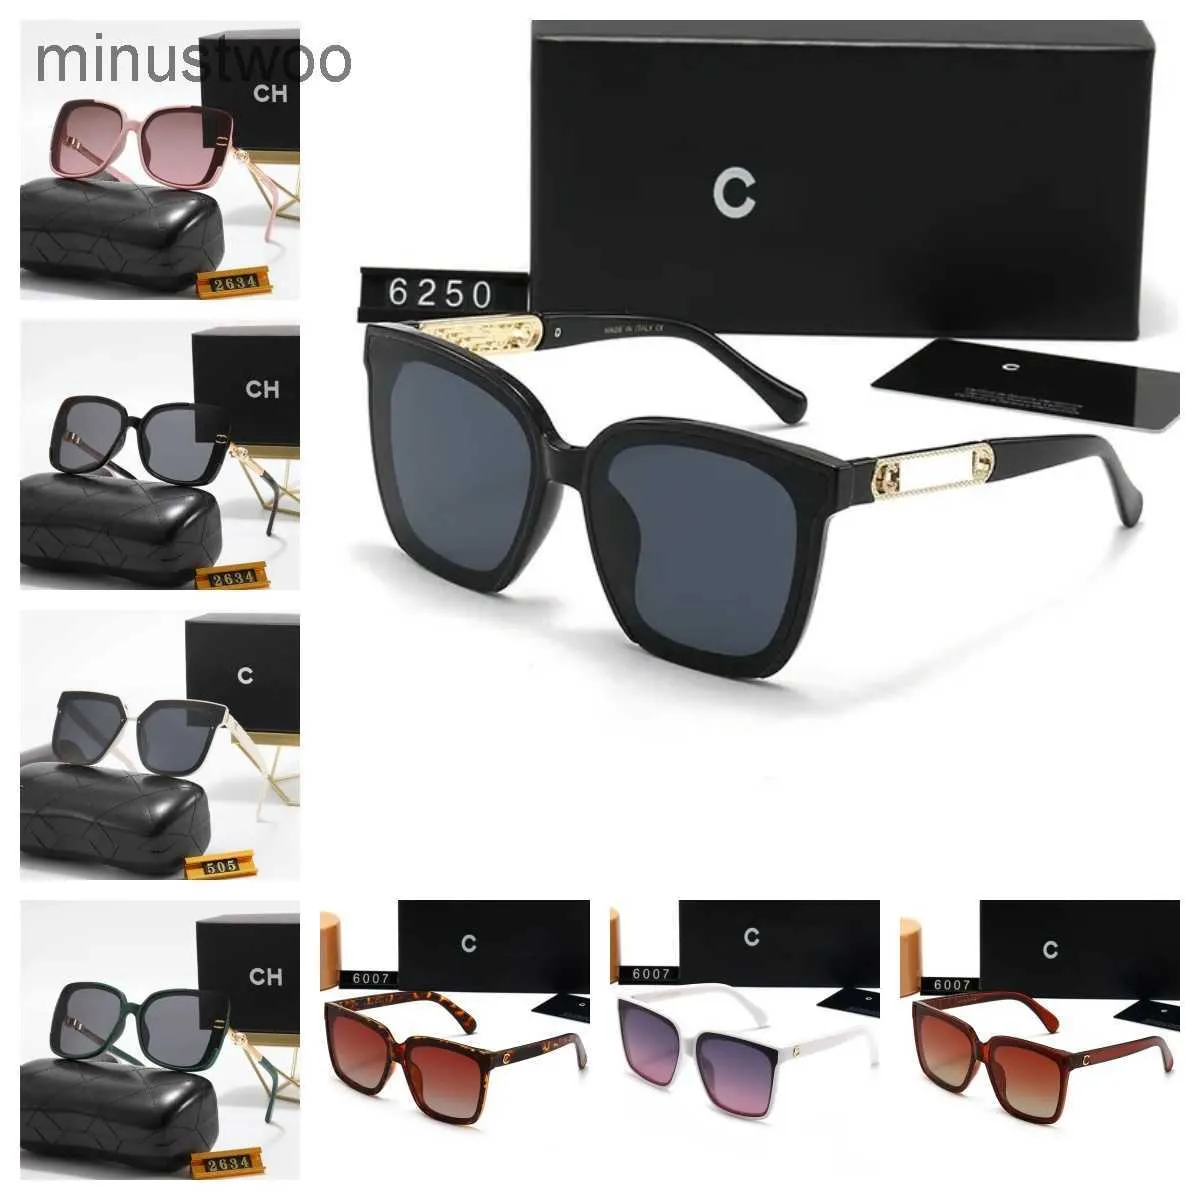 Mode CH Sonnenbrille Designer Sonnenbrille für Frauen Männer Ovale Sonnenbrille Klassische Buchstabe Design Debütantstil Stylish Glass Square Eye Außenrahmen UV 400